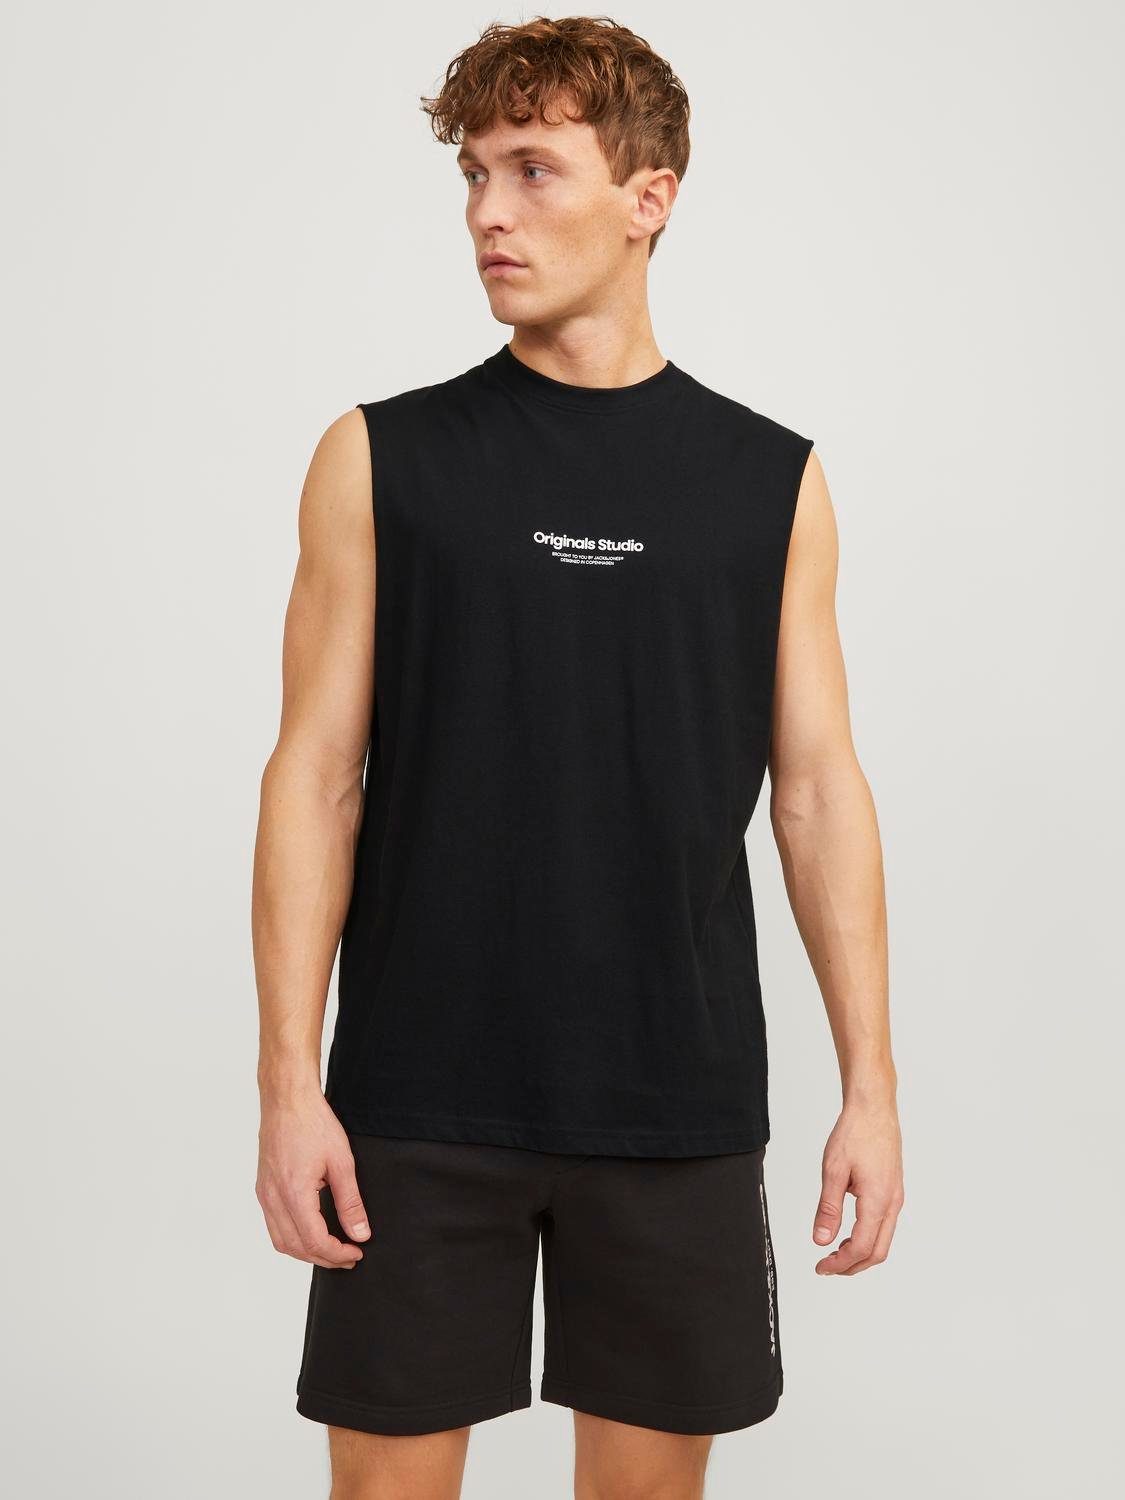 JACK & JONES ORIGINALS oversized T-shirt JORVESTERBRO met printopdruk black